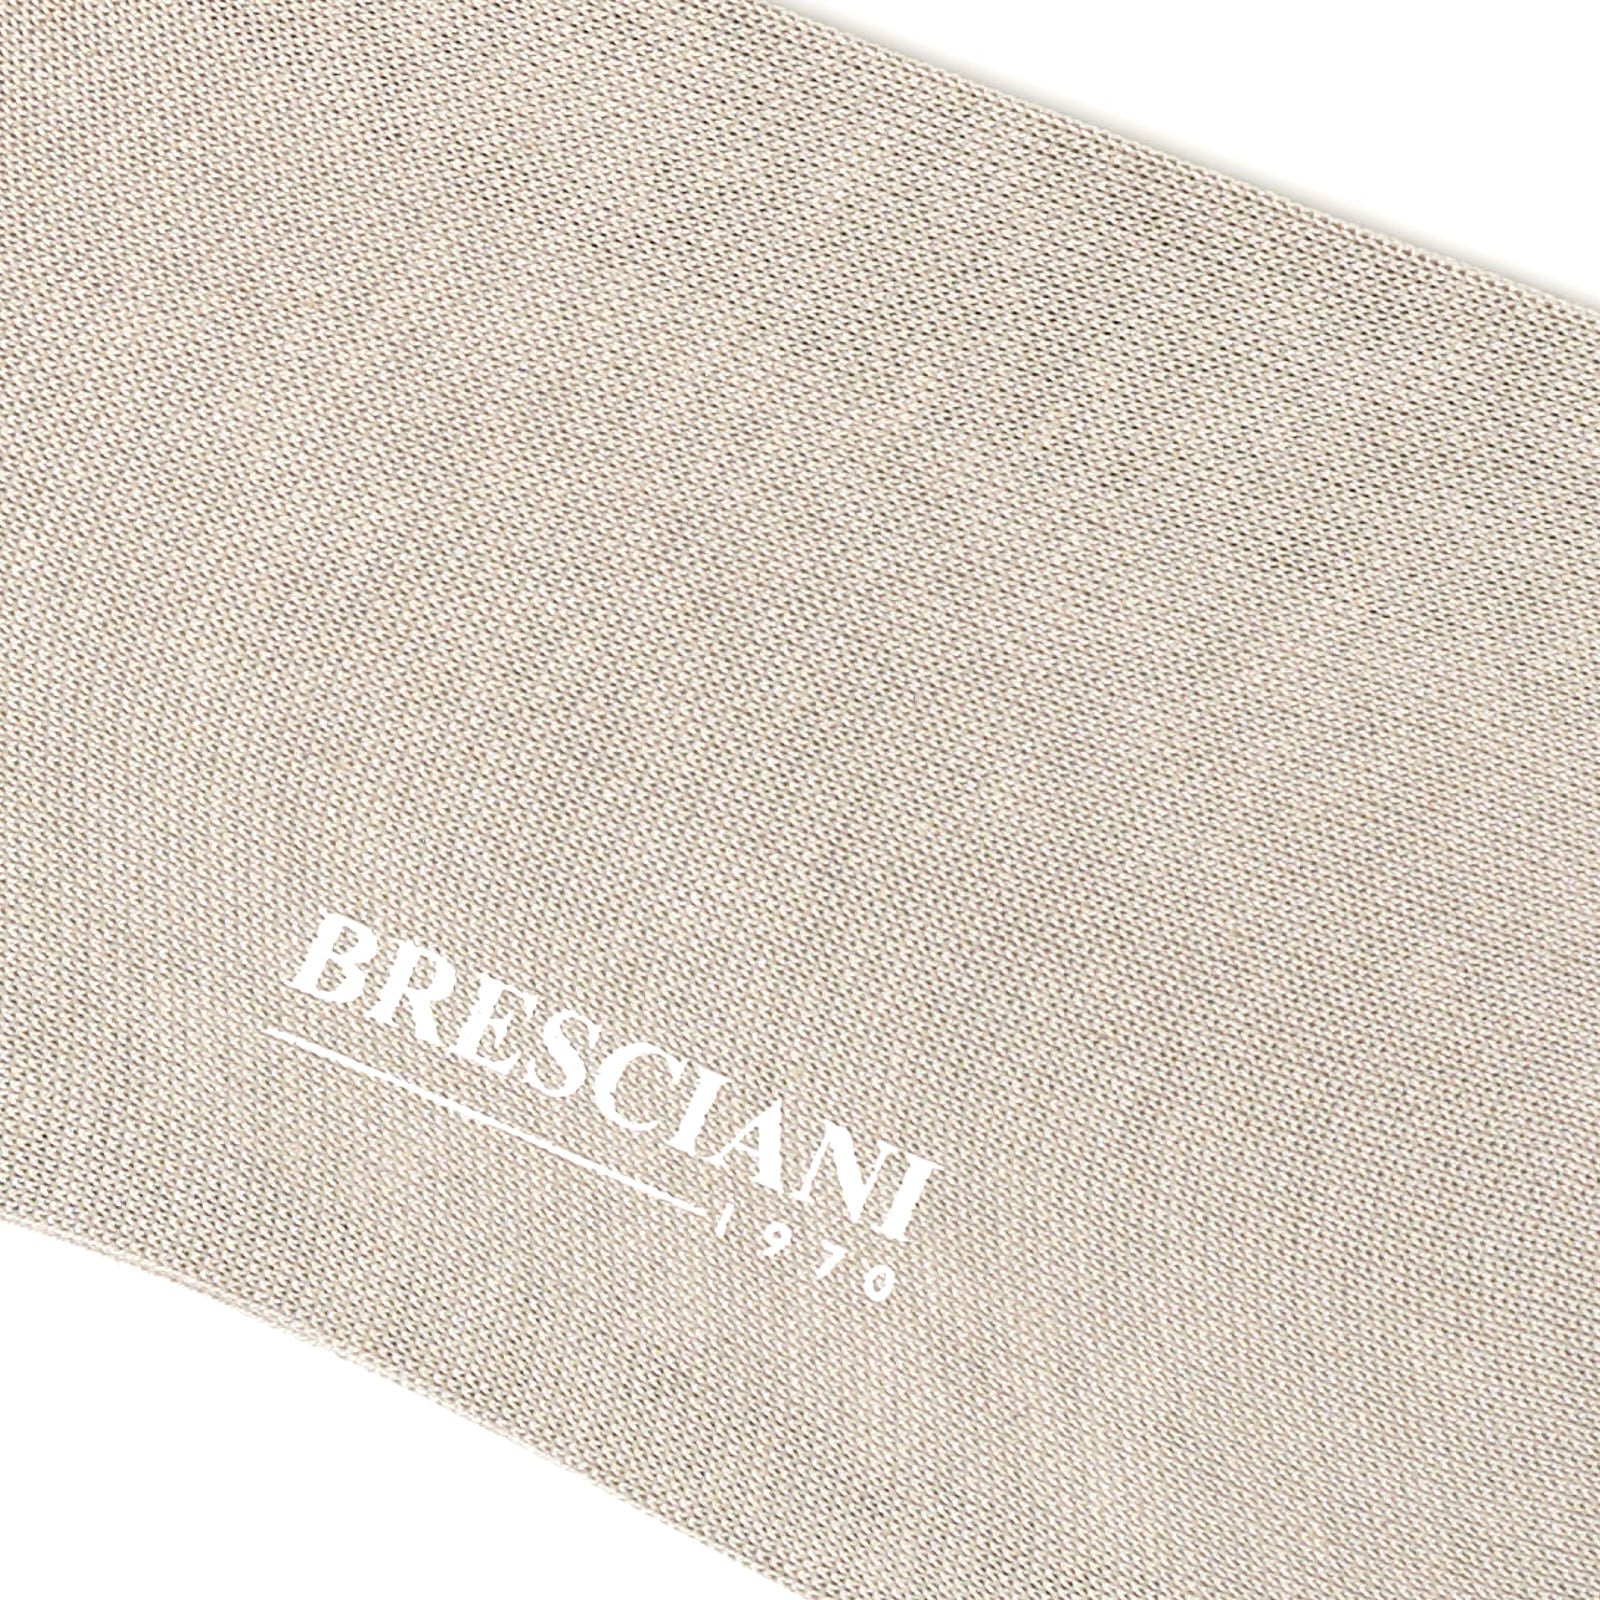 BRESCIANI Cotton-Silk Mid Calf Length Socks US M-L BRESCIANI